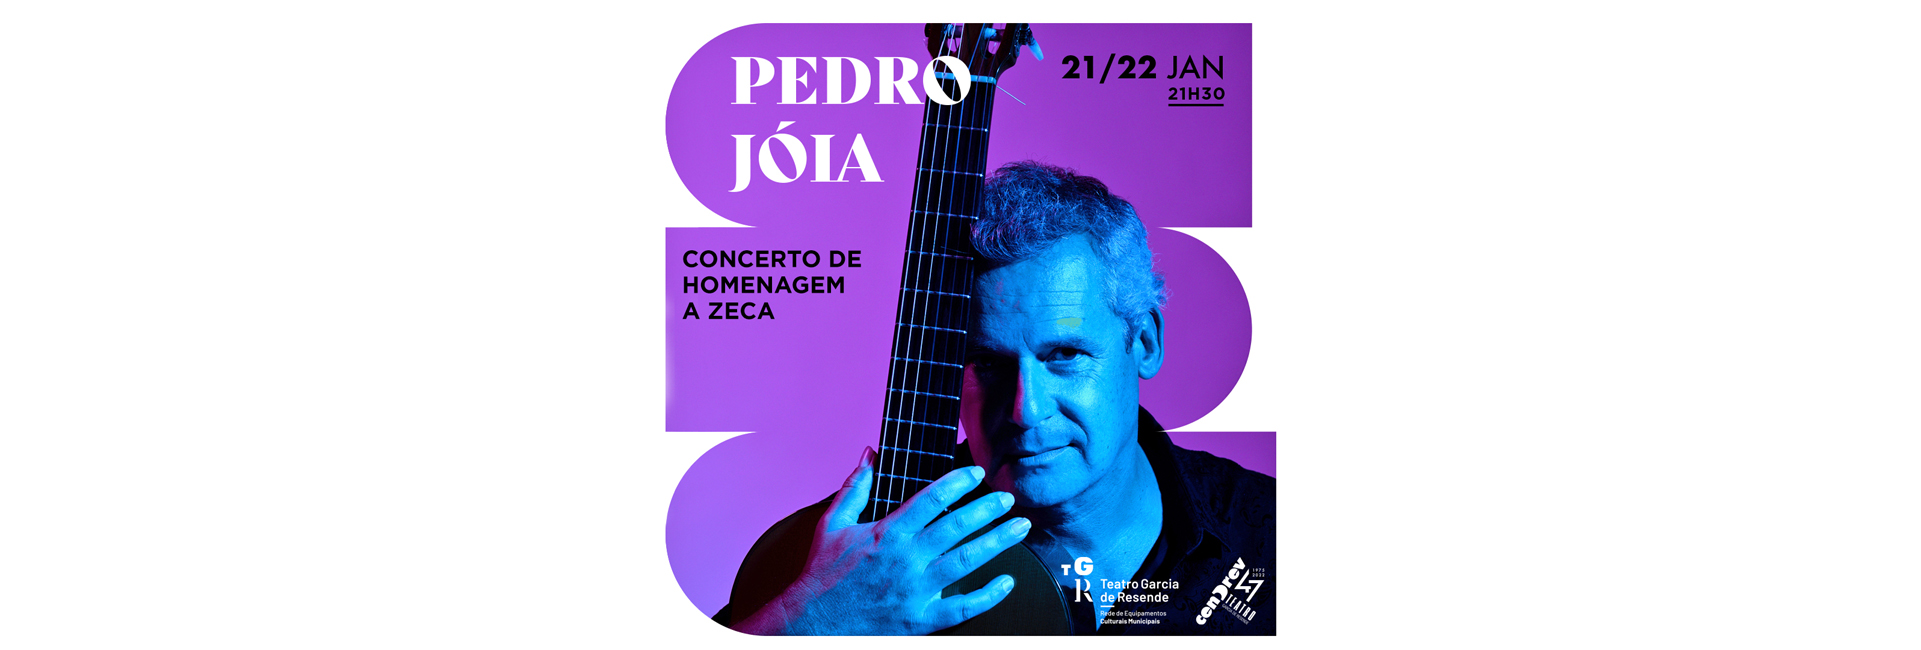 Pedro Jóia | Concerto de Homenagem a Zeca